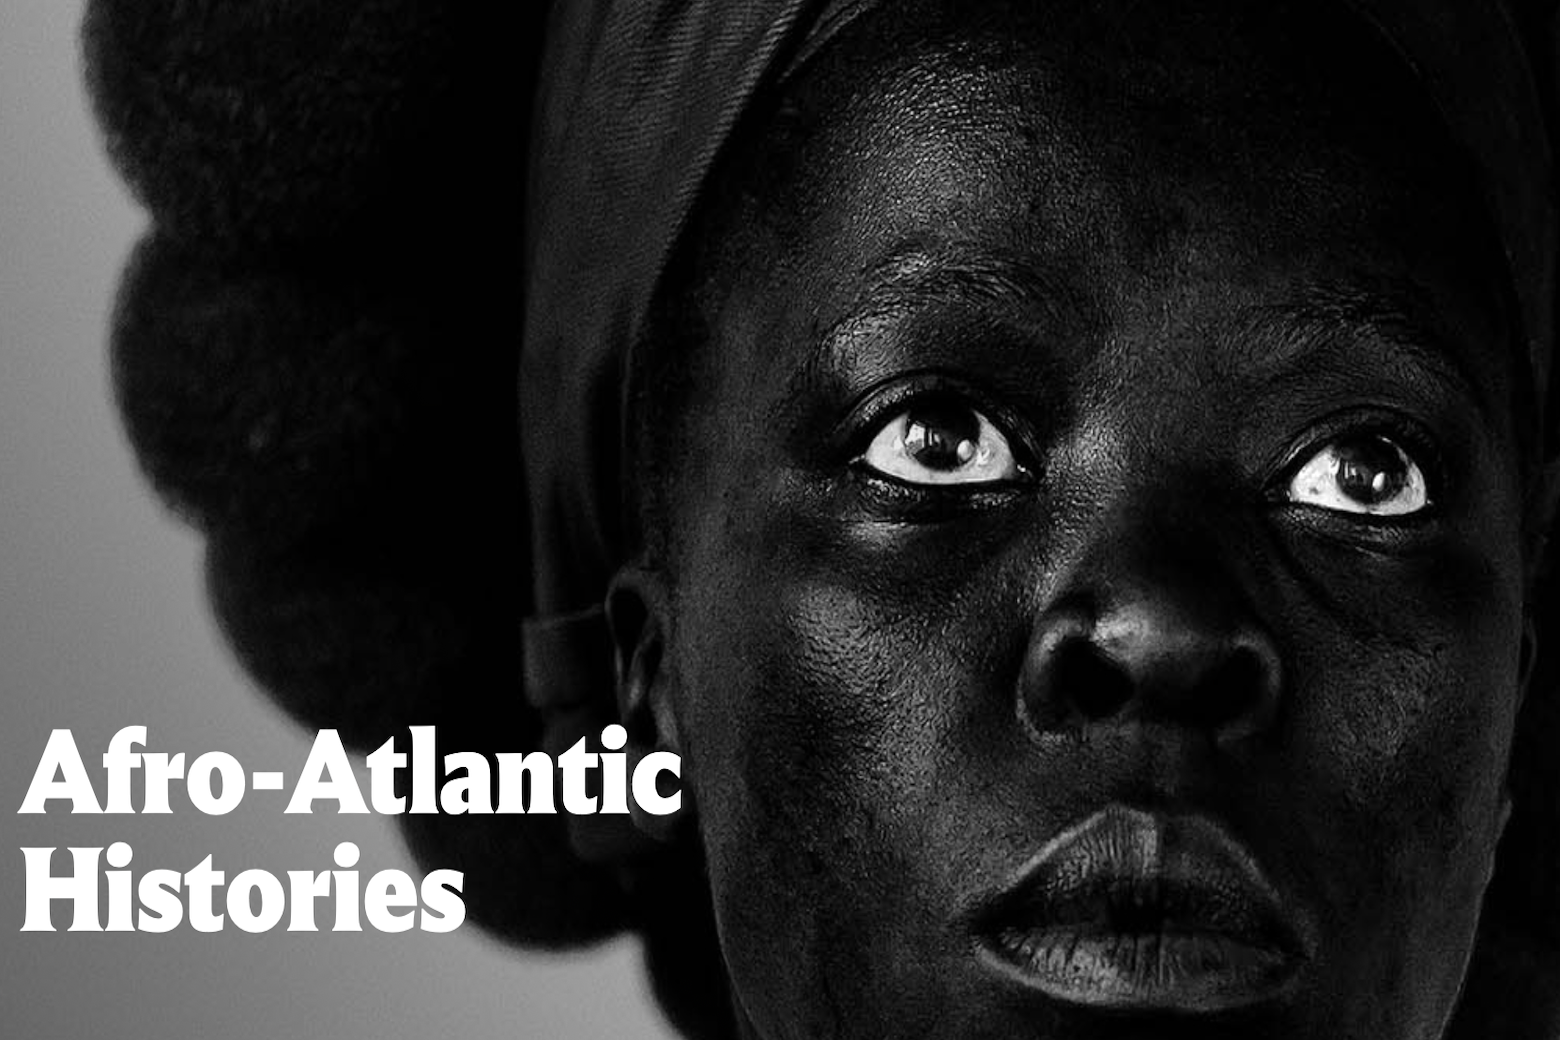 Passado e presente colidem enquanto a Galeria Nacional de Arte apresenta uma exposição sobre a história afro-atlântica